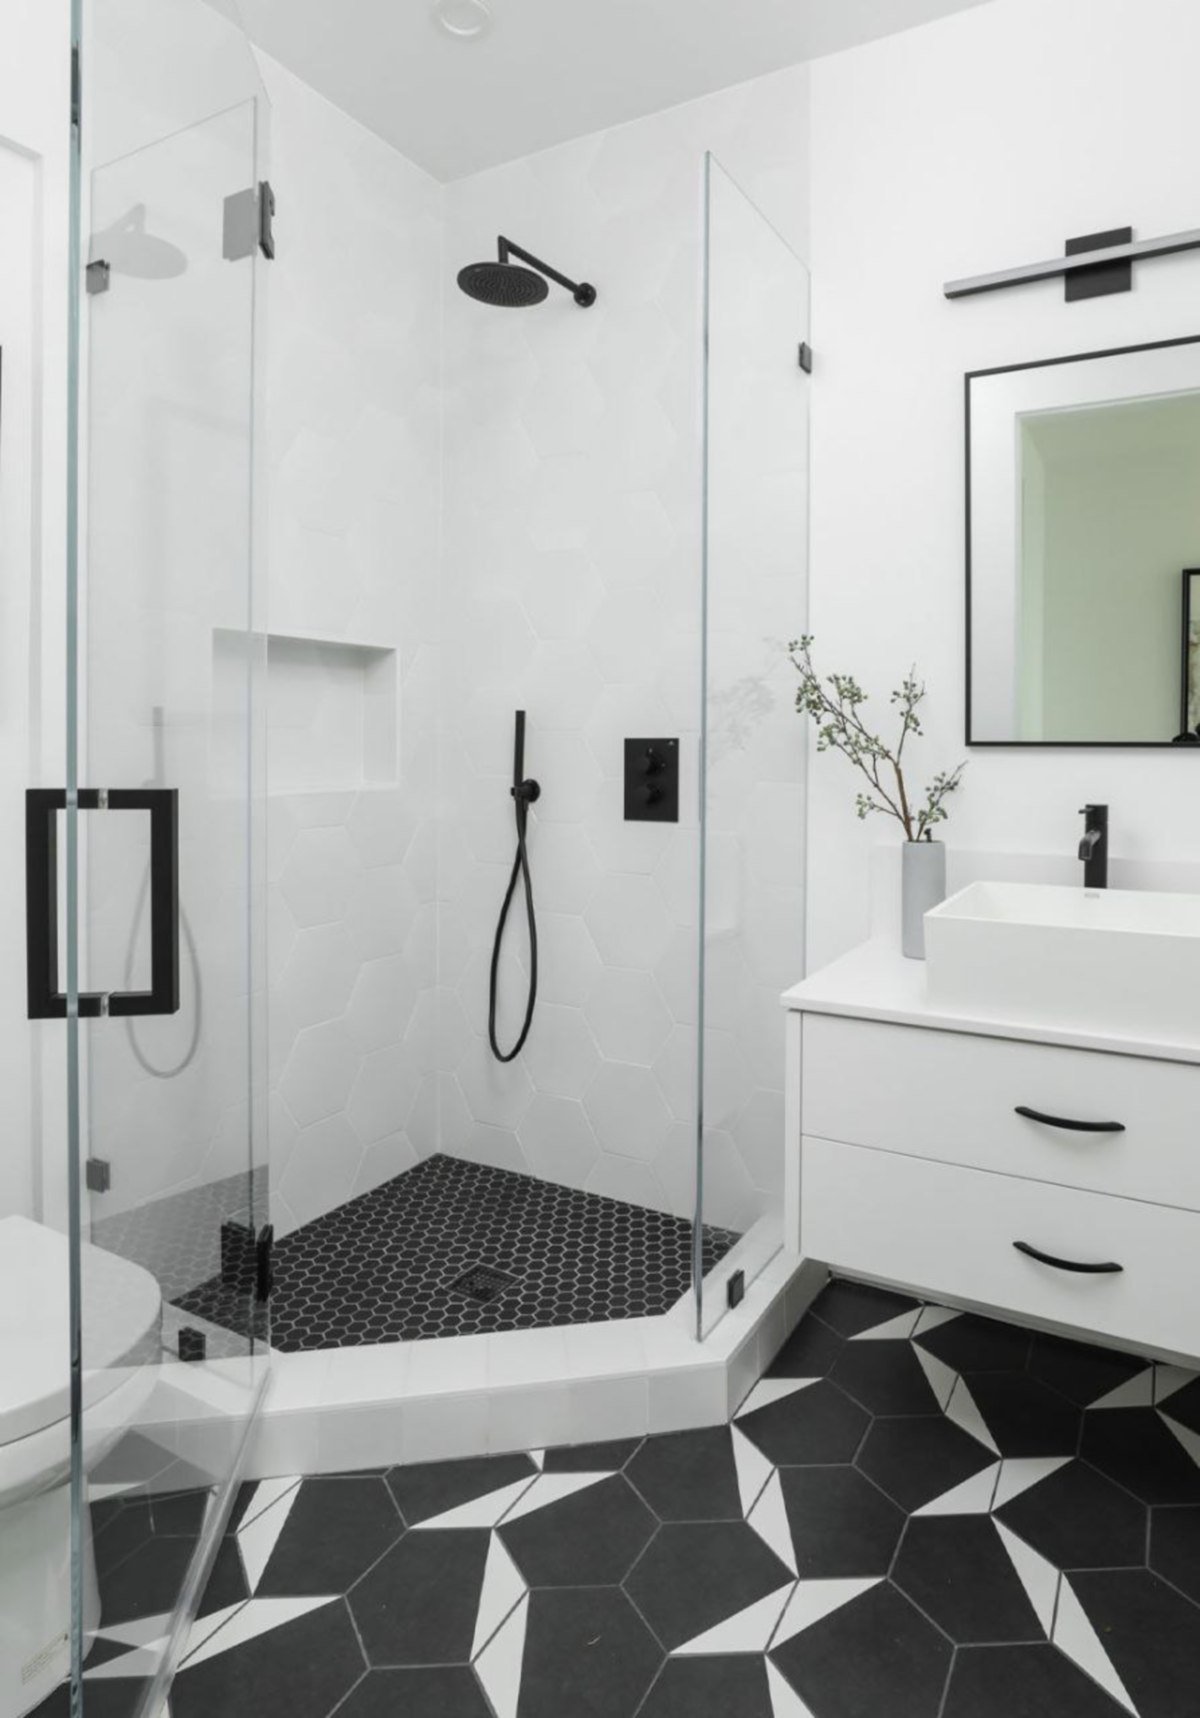 RUANG mandi biasanya diletakkan pada bahagian bucu bilik air dan gunakan pintu kaca untuk menutup ruang berkenaan. 